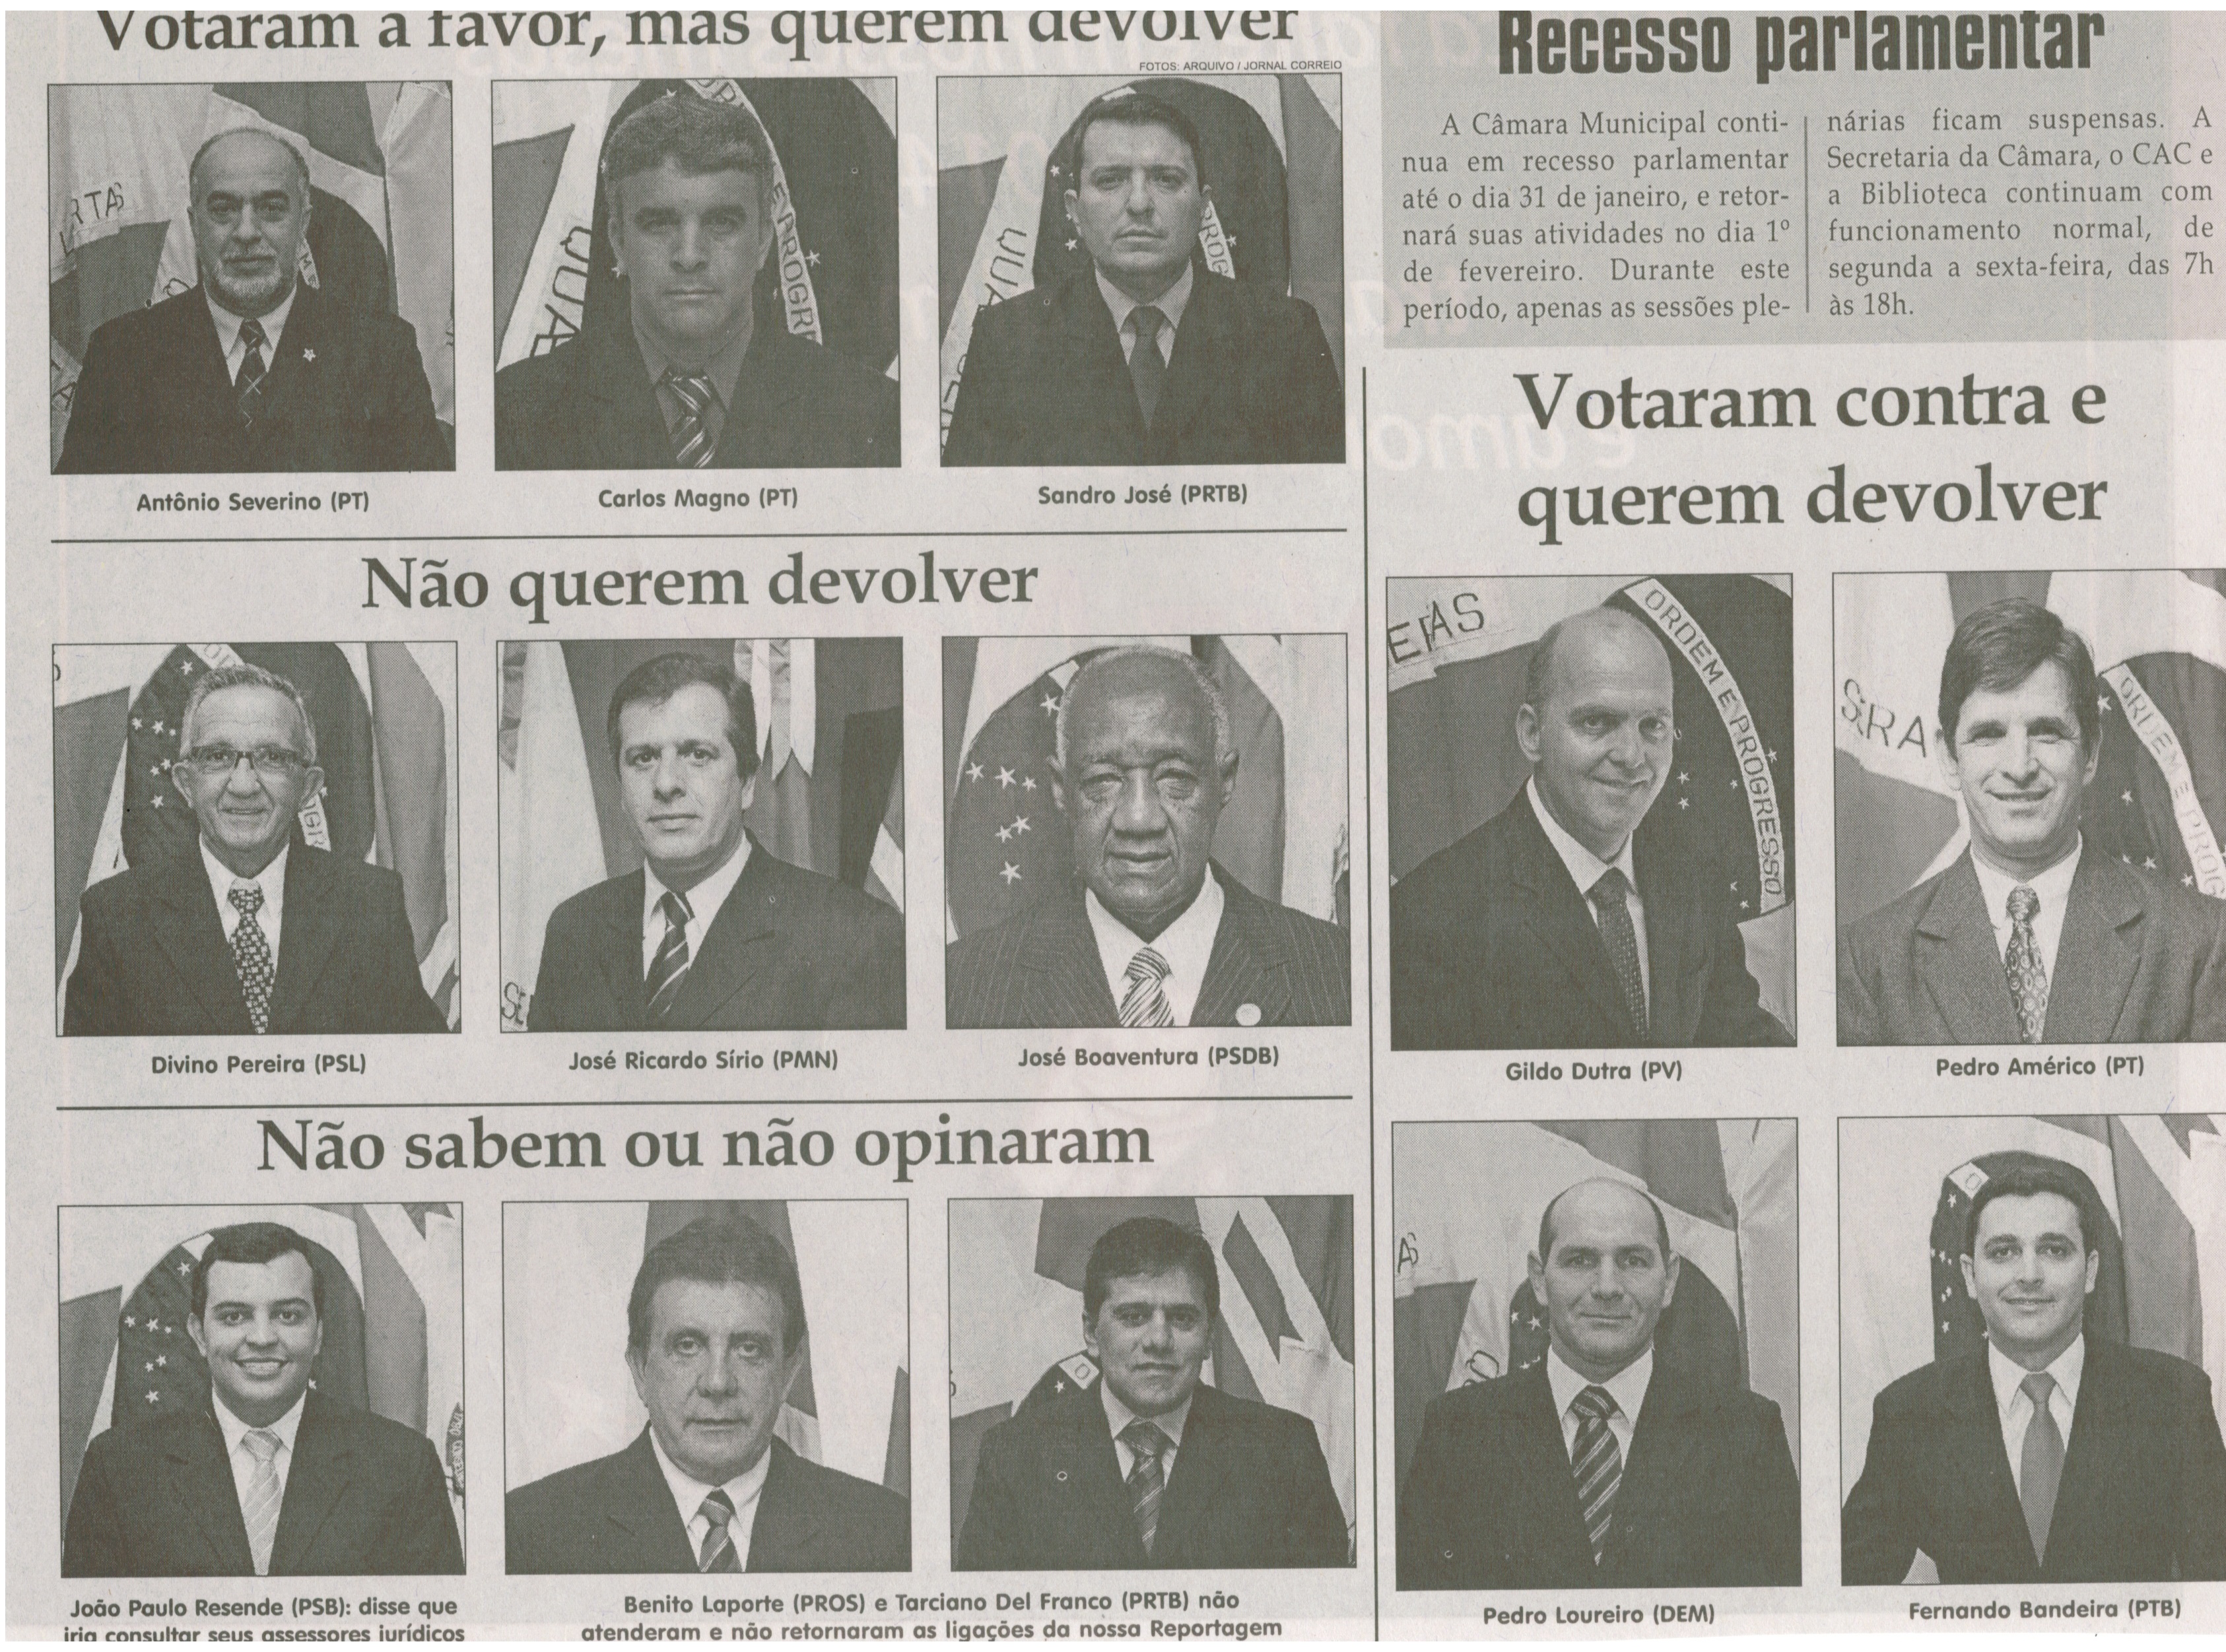 7 vereadores querem devolver 13 º salário. Jornal Correio da Cidade, Conselheiro Lafaiete, 28 dez. 2013, Parte II, p. 6.